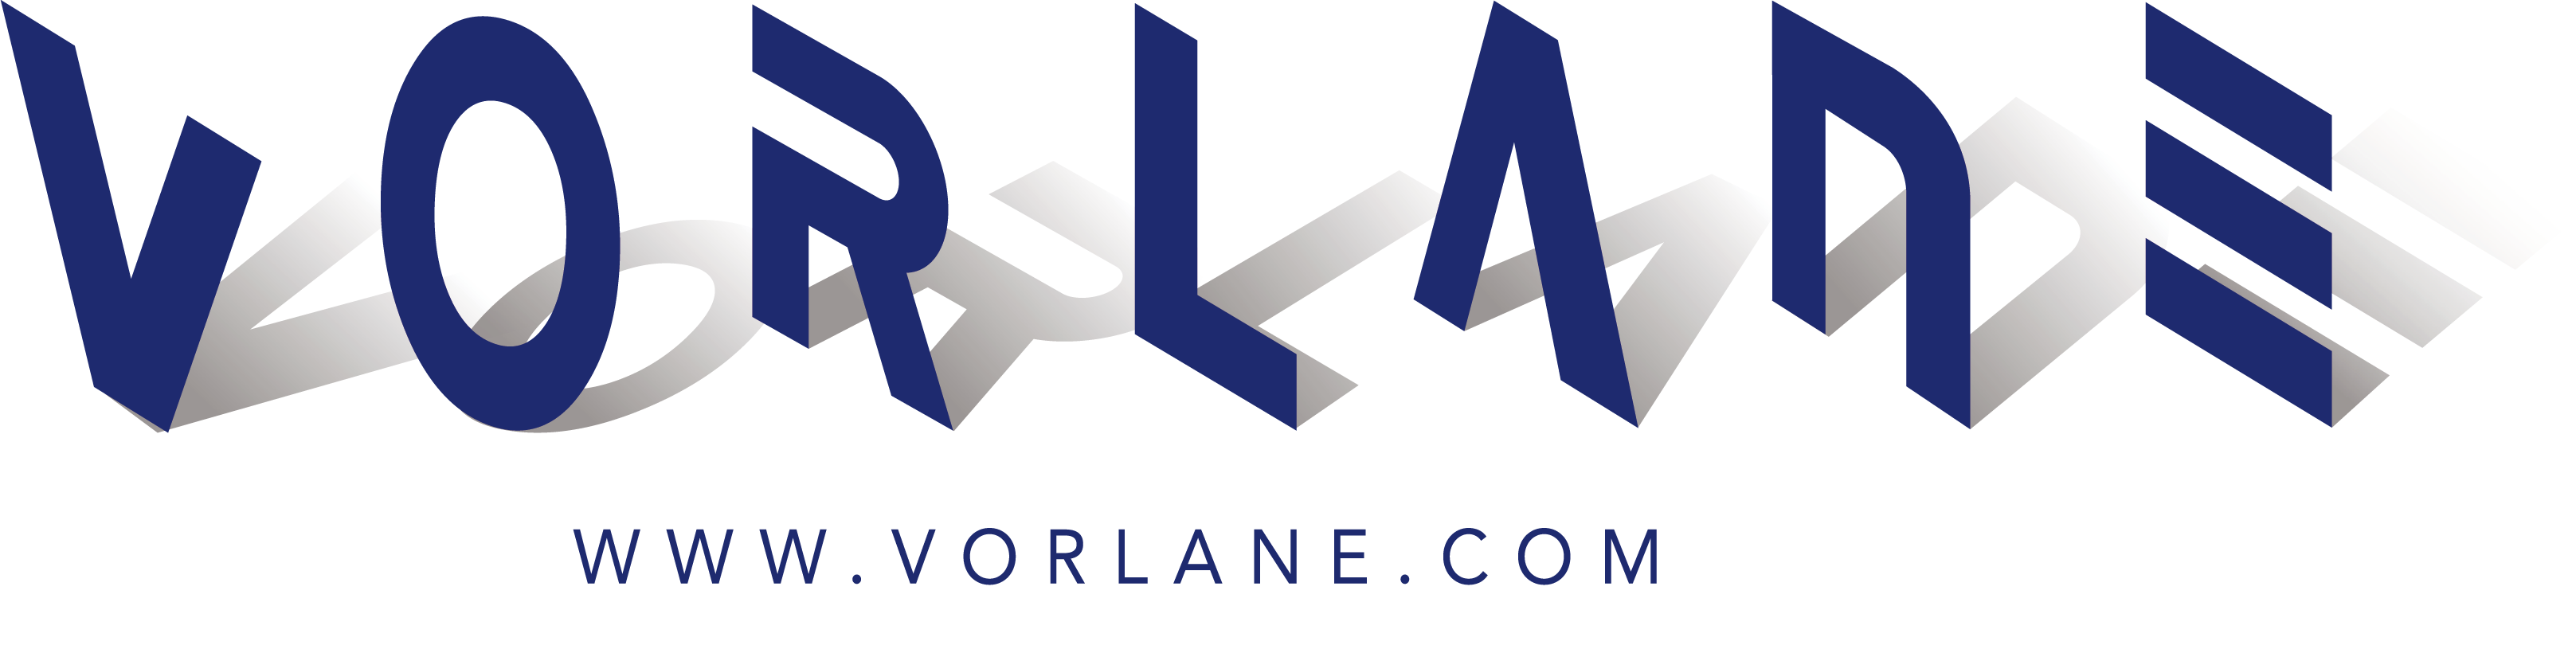 vorlane logo 1